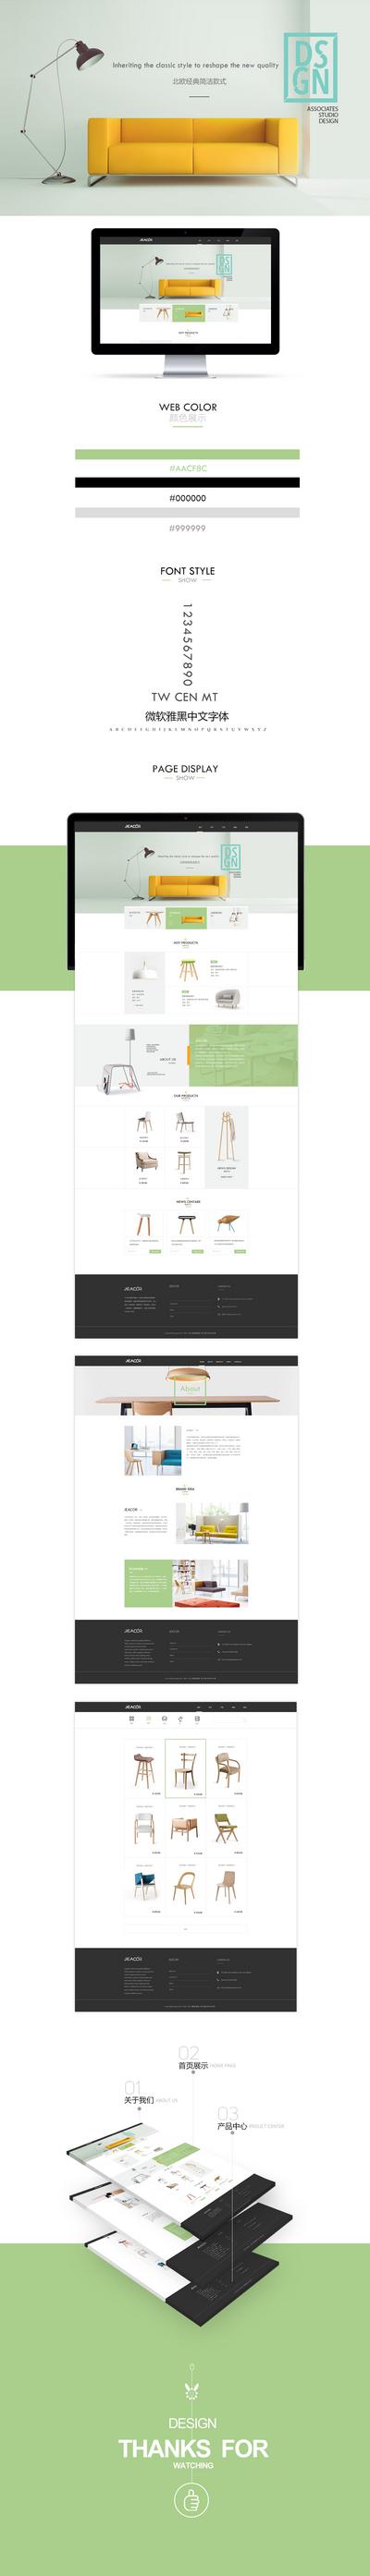 南门网 网页设计 网站设计 家居 家具 简洁 小清新 排版